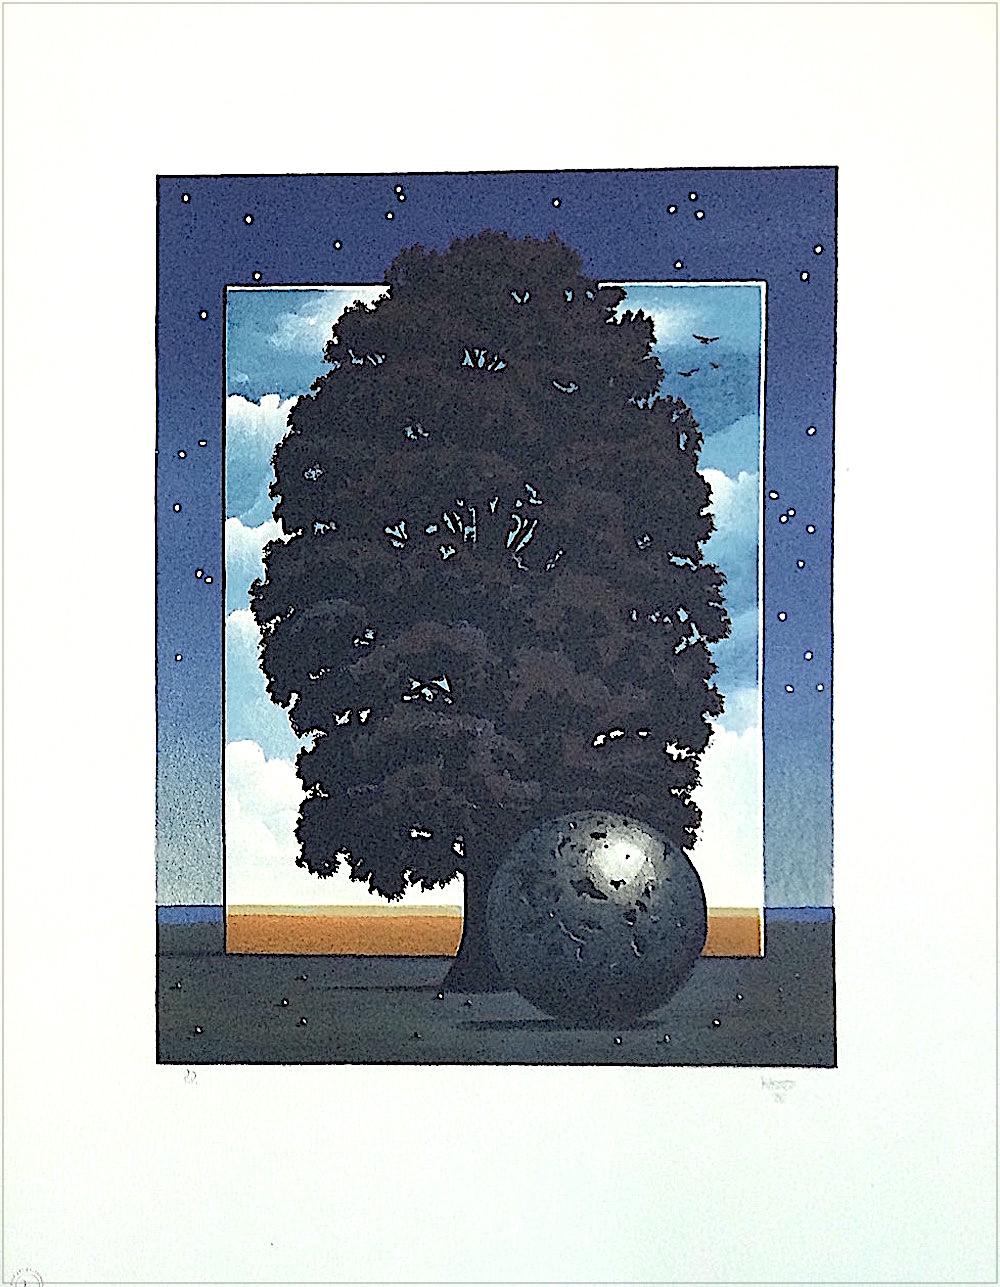 Landscape Print Michael Hasted - LIGHT OF DISCOVERY, lithographie dessinée à la main, paysage surréaliste, ciel nocturne, arbre 